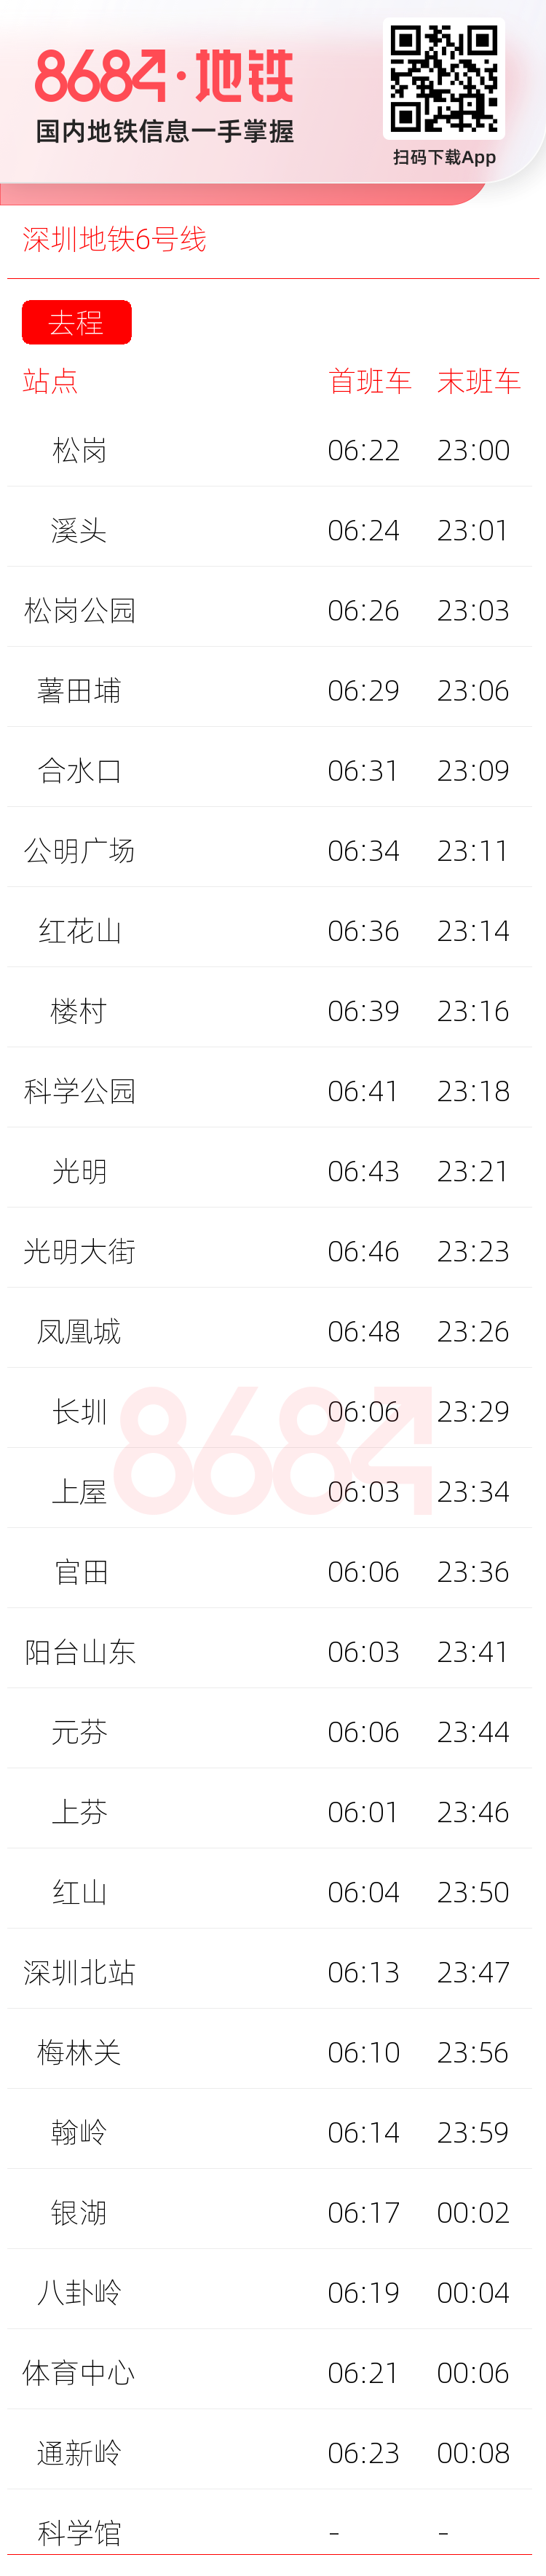 深圳地铁6号线运营时间表